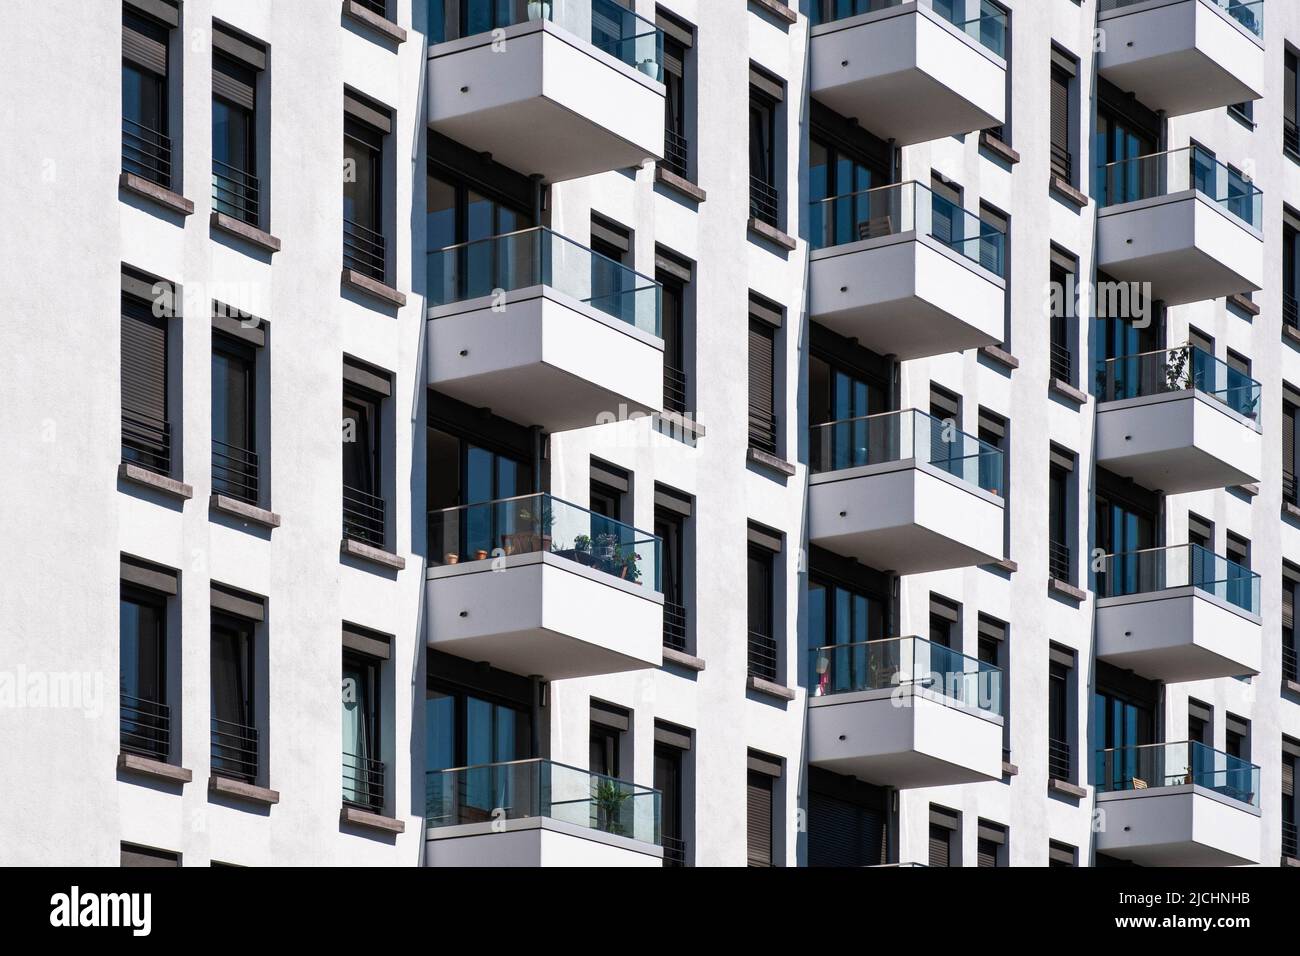 fachada moderna de edificio de apartamentos, inmobiliaria residencial Foto de stock